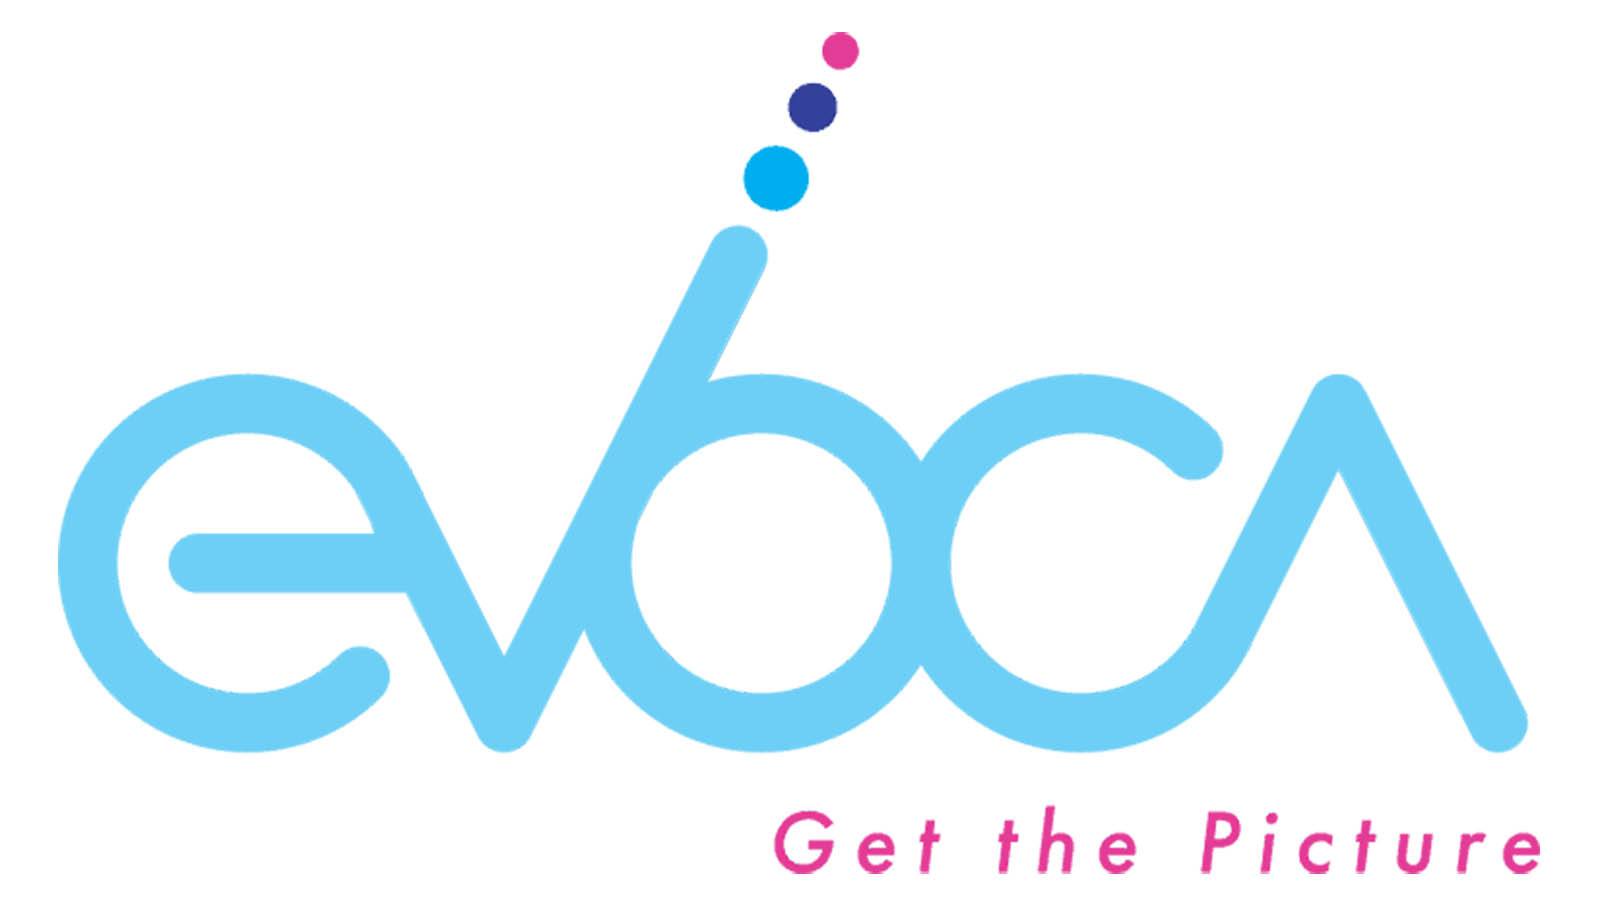 Evoca_Logo_Final